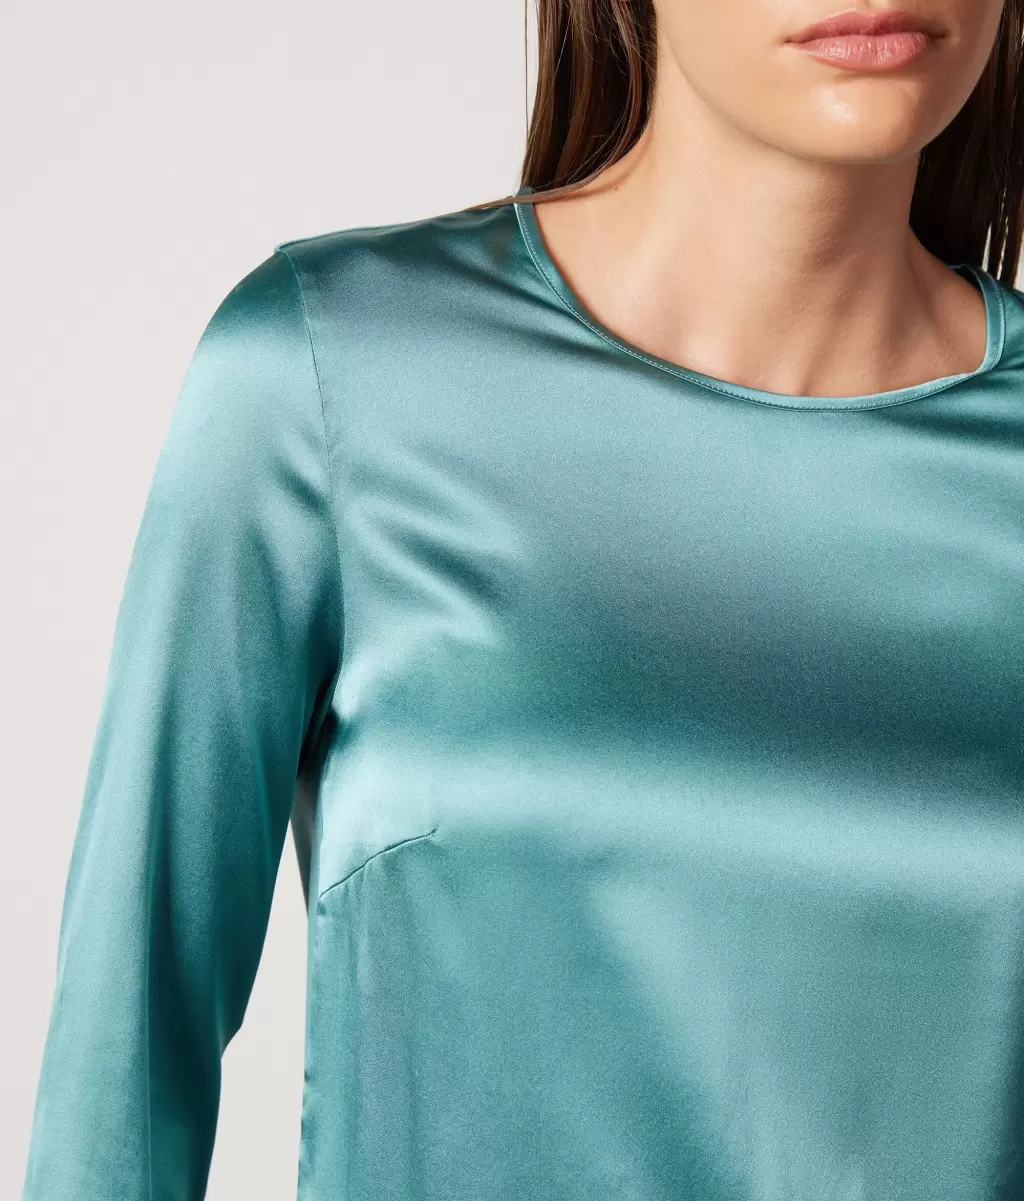 Bluzka Z Okrągłym Dekoltem Z Satyny Jedwabnej Green Falconeri Koszule I Bluzki Kobieta - 3